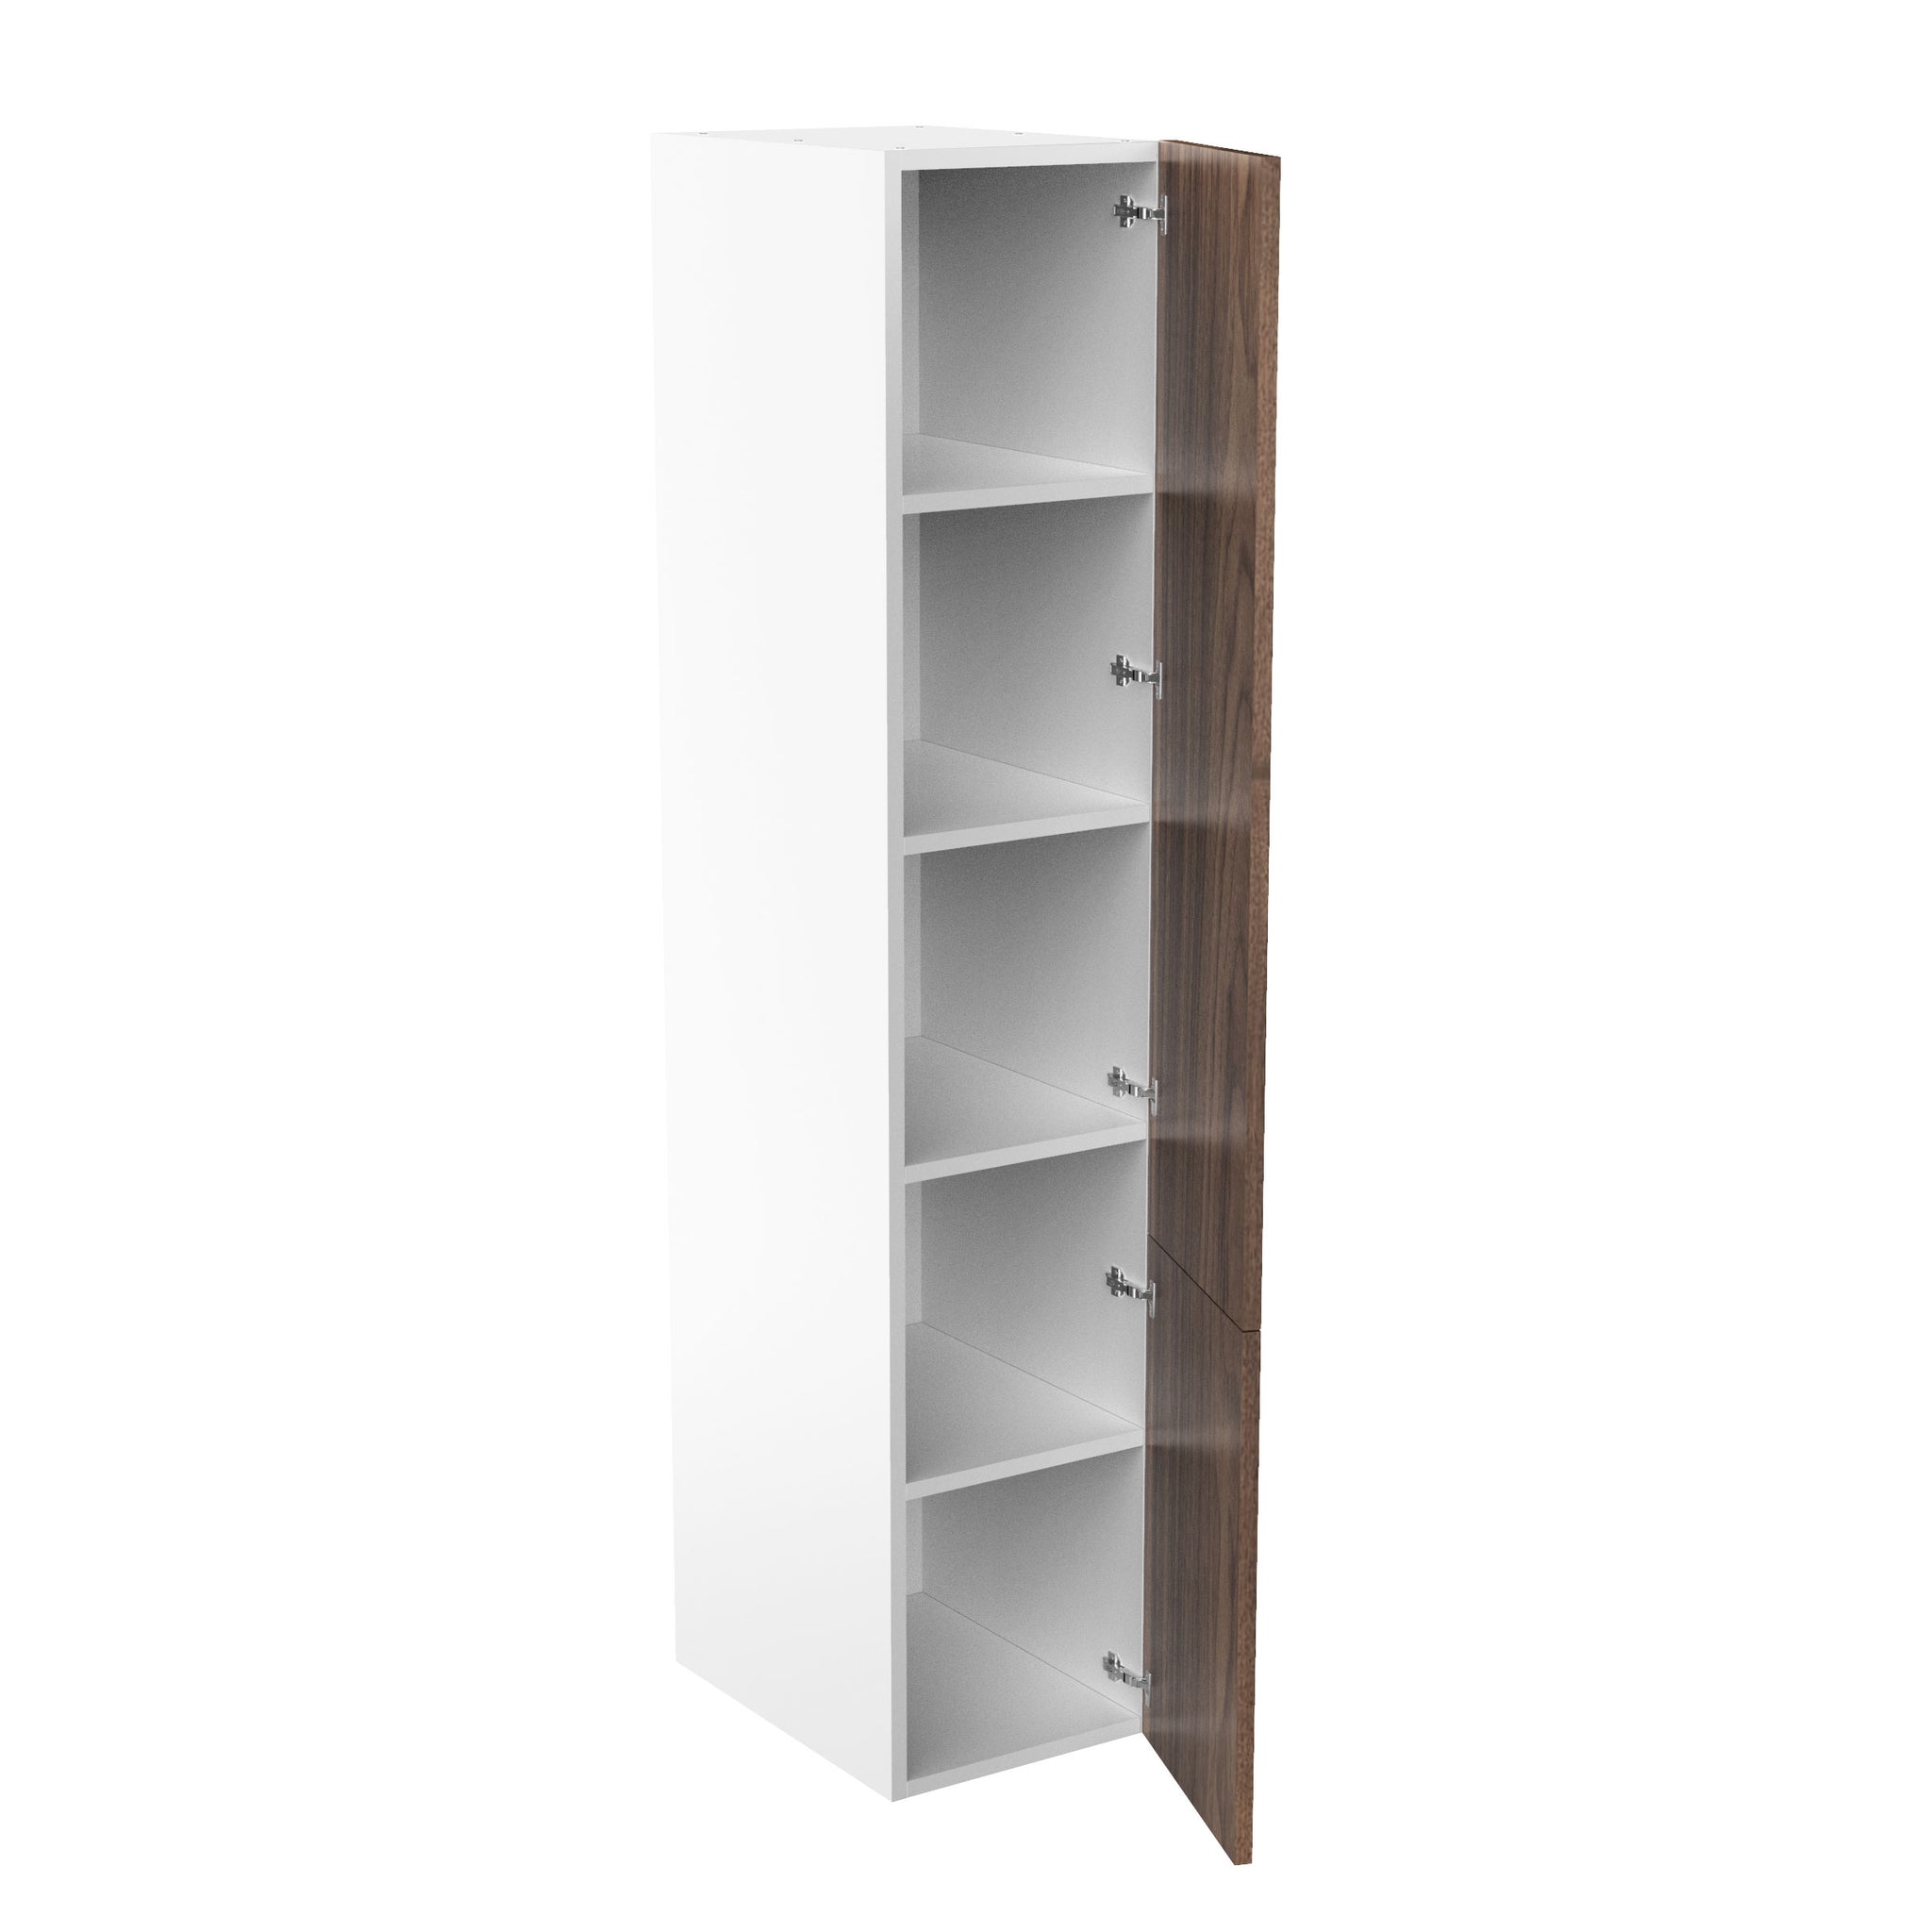 RTA Walnut Cabinet - Single Door Tall Cabinets | 18"W x 90"H x 23.8"D